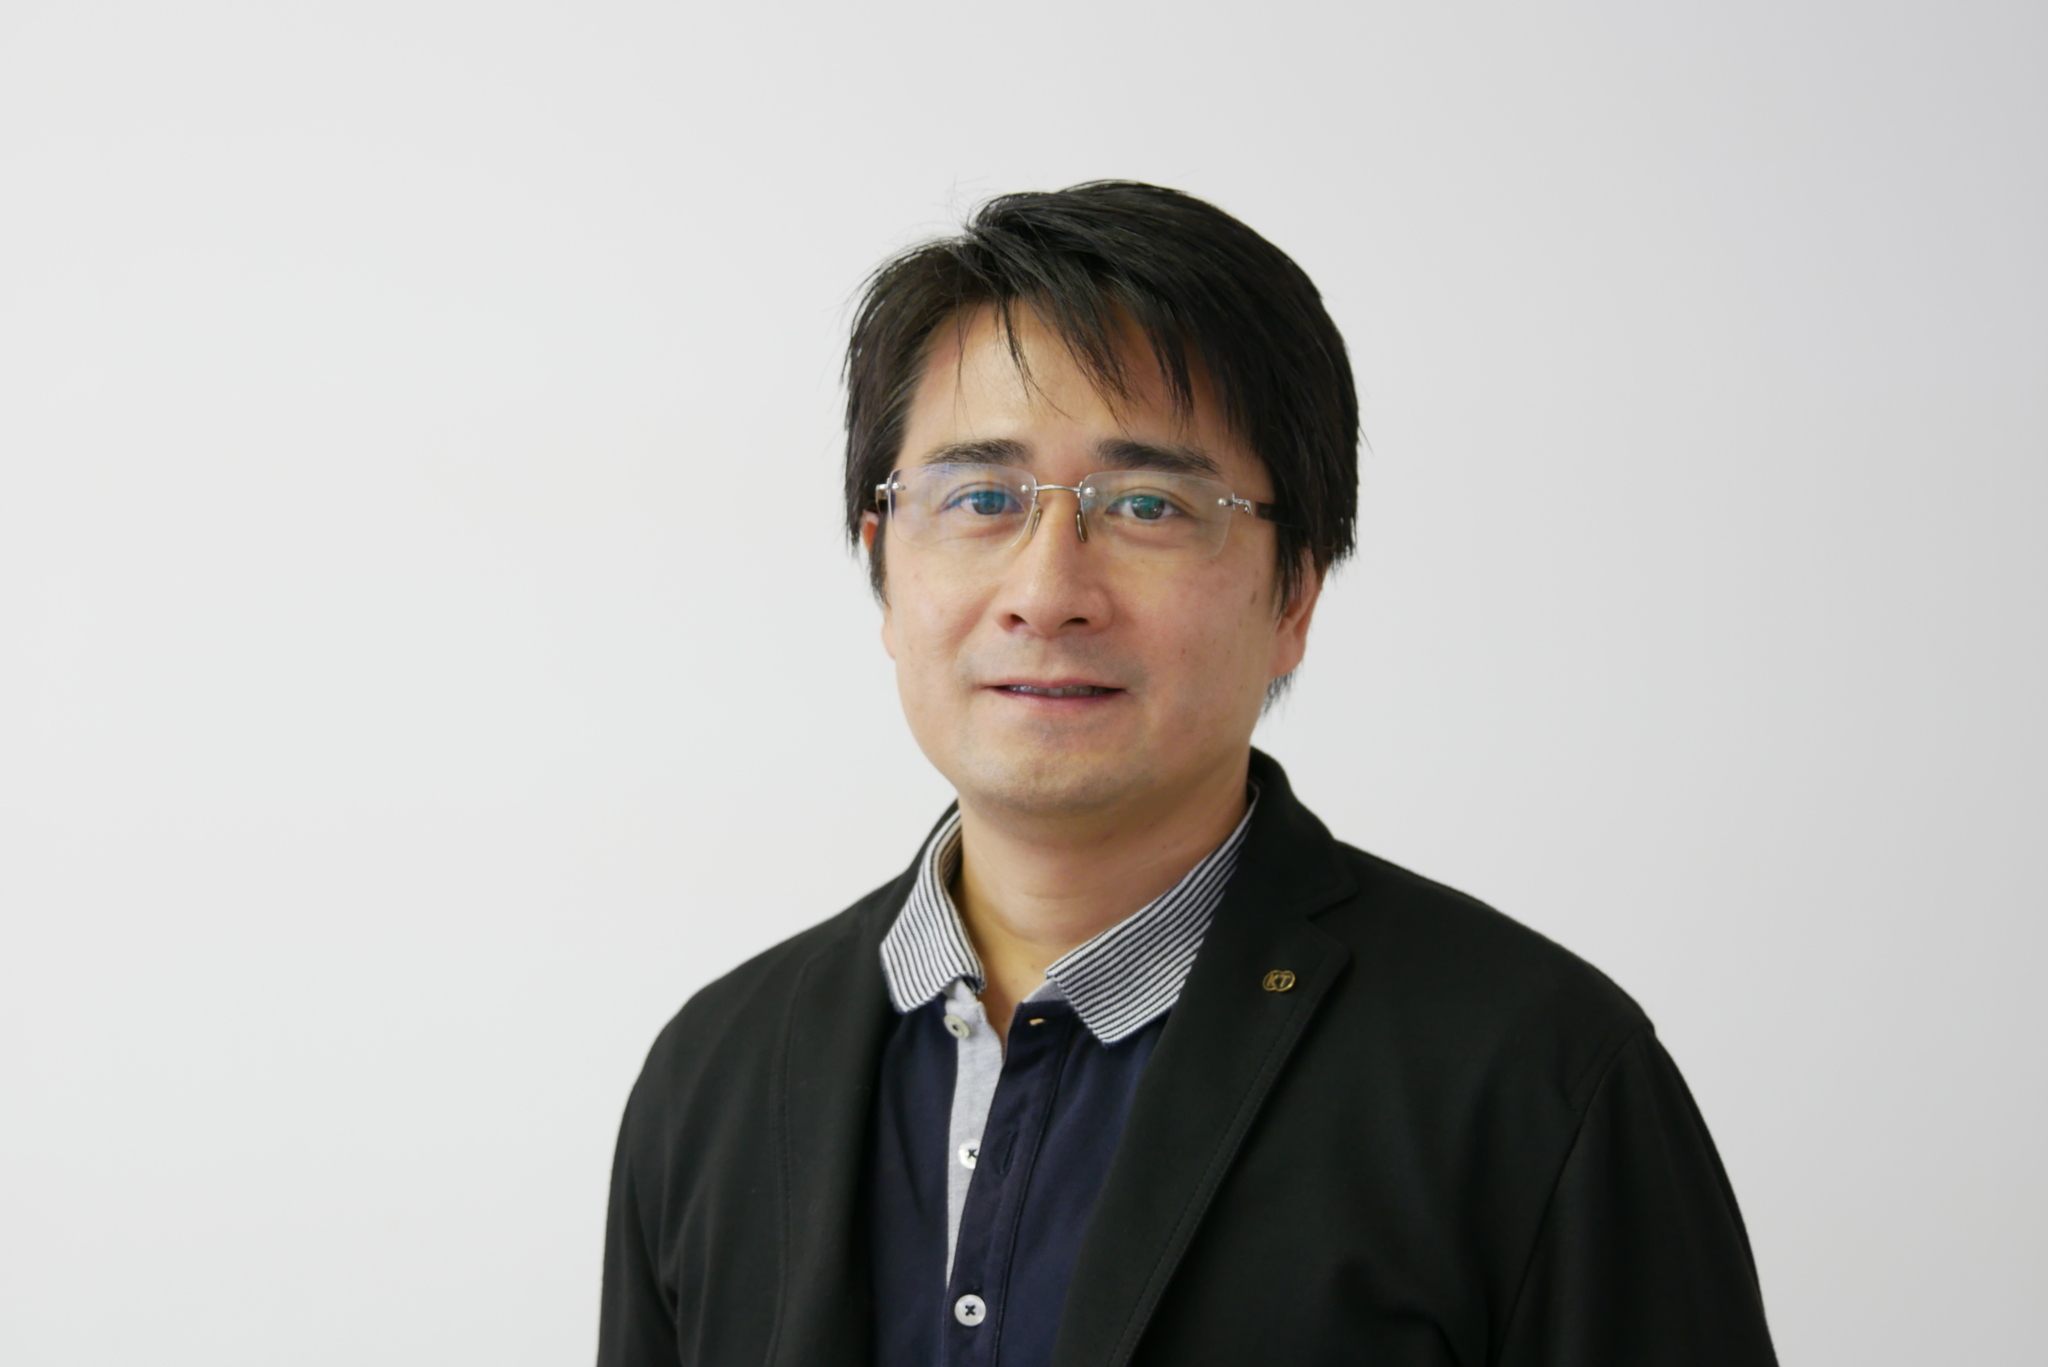 Producer Akihiro Suzuki